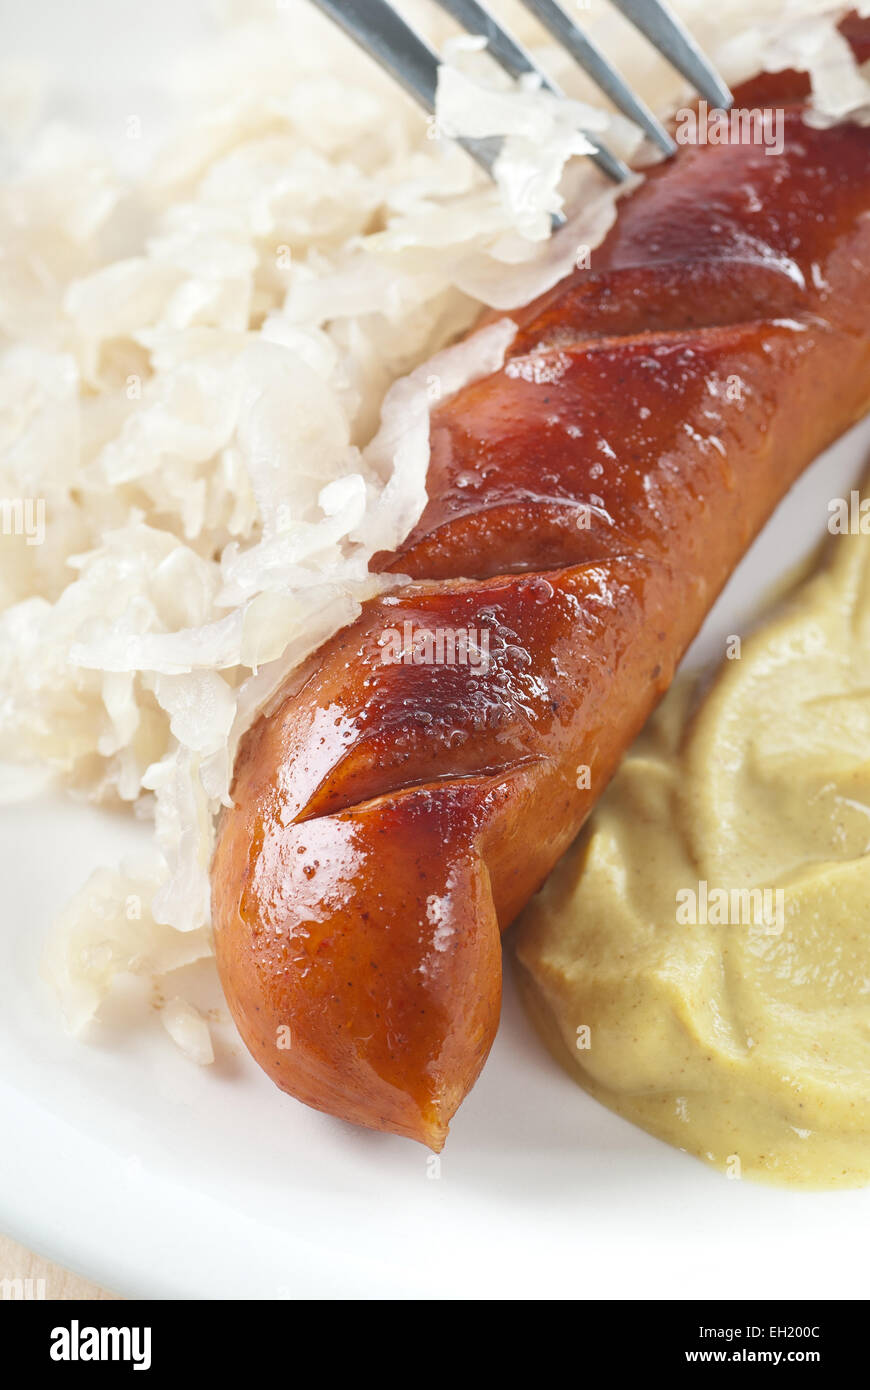 Bratwurst with sauerkraut and mustard. Stock Photo